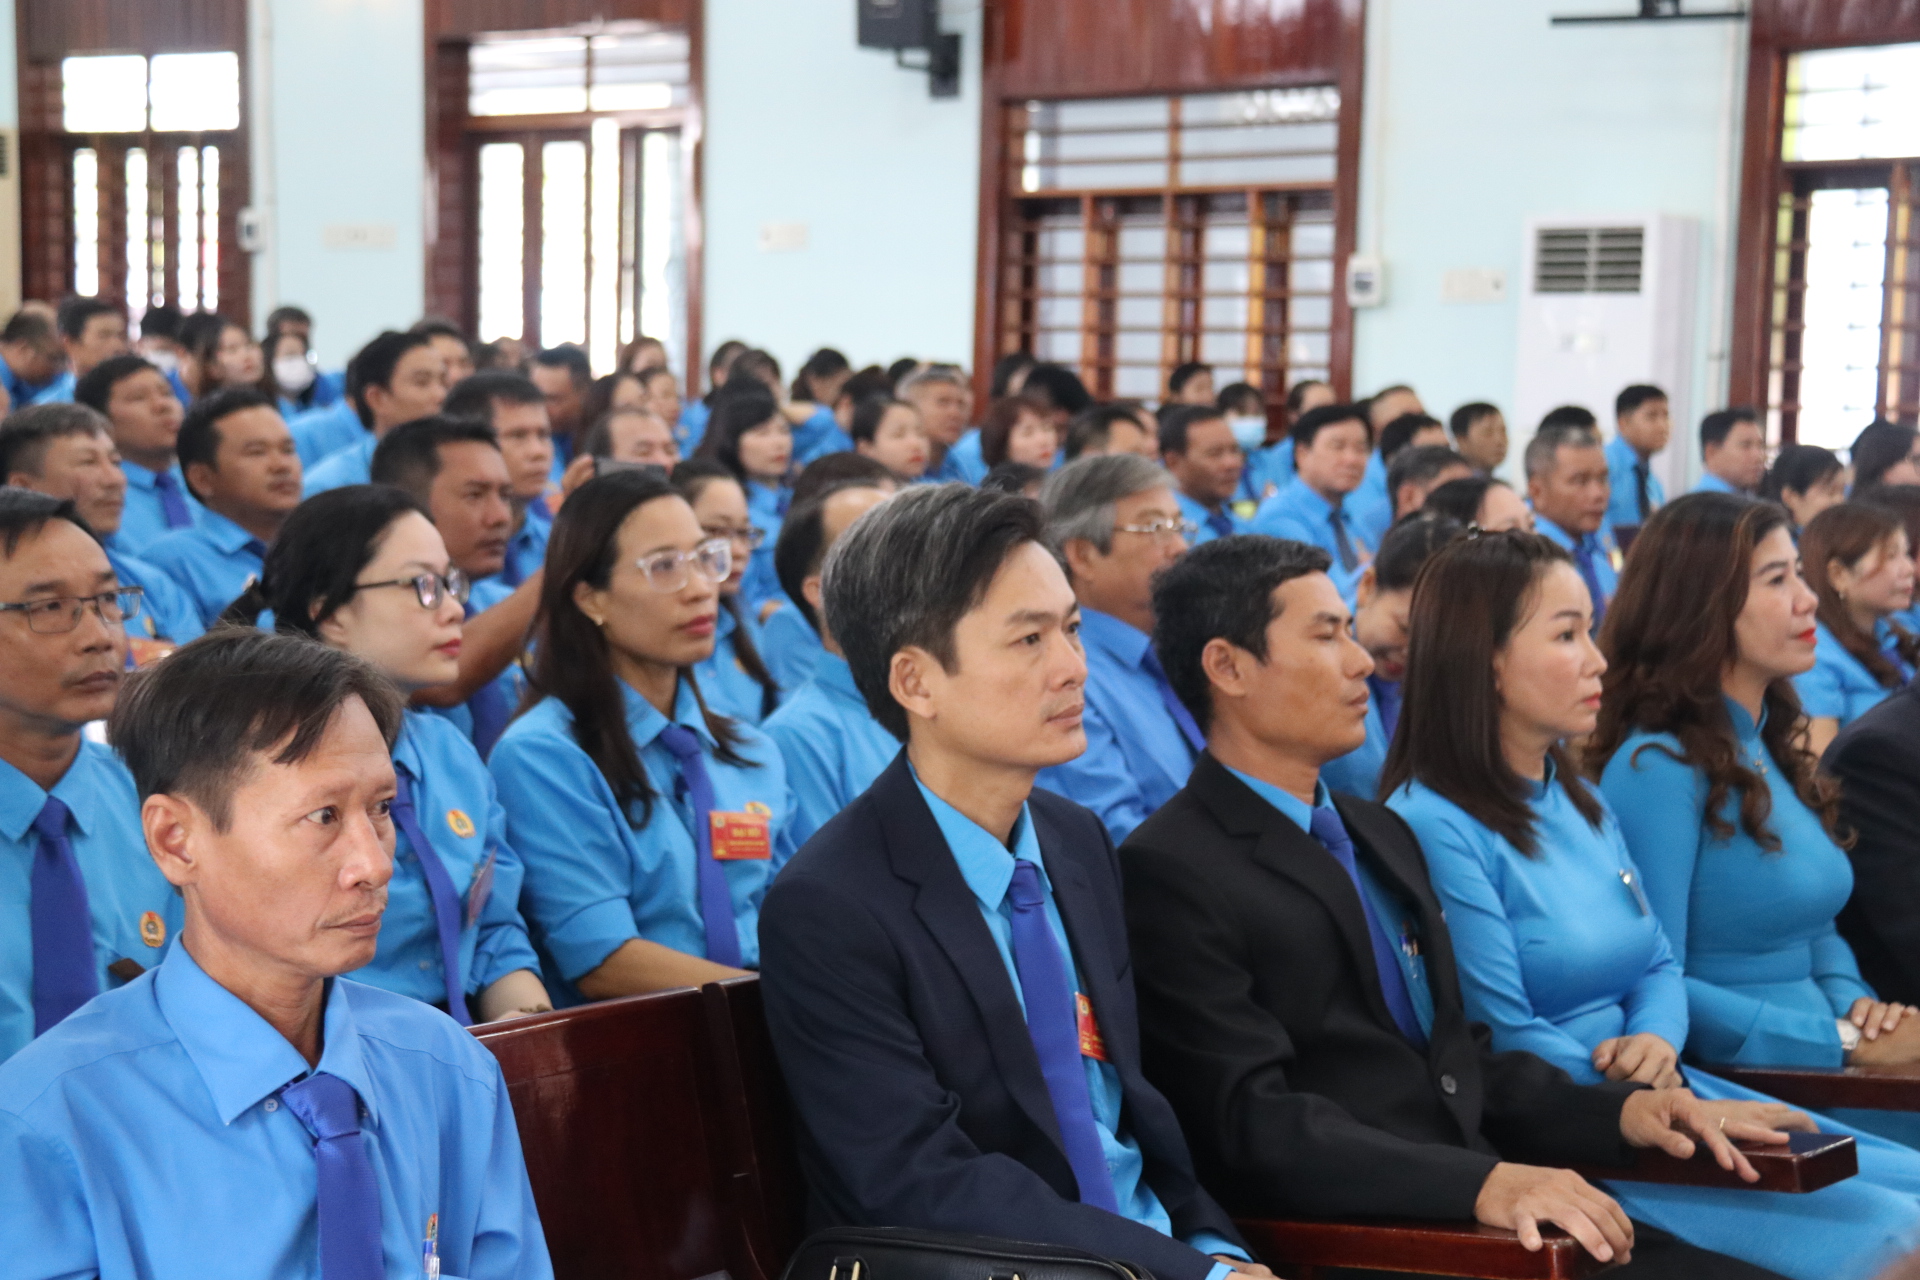 Đại hội Công đoàn huyện Vạn Ninh lần thứ XI đánh giá kết quả đạt được và hạn chế trong nhiệm kì 2018-2023. Ảnh: Phương Linh